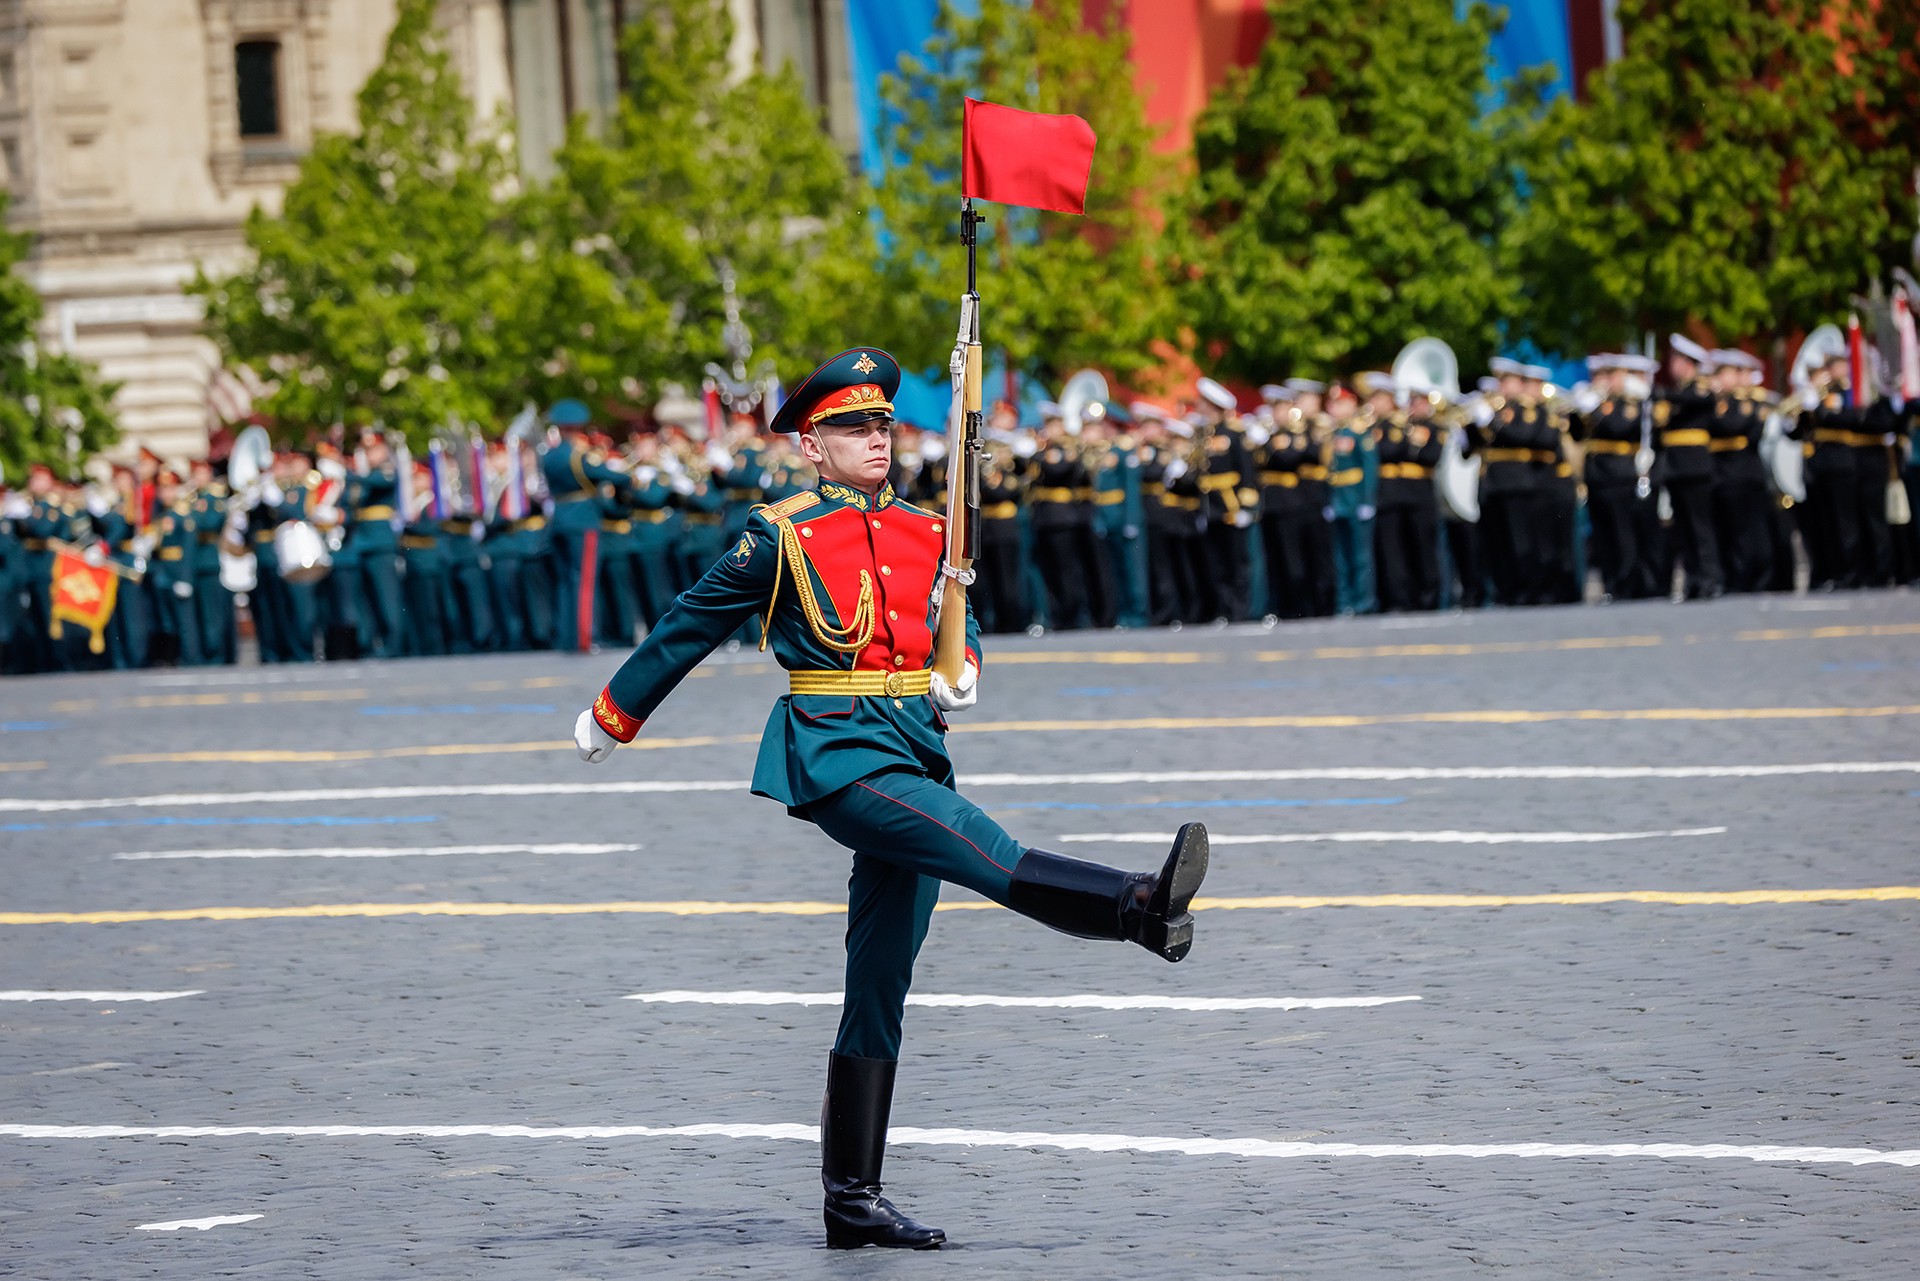 Лукашенко оценил парад на Красной площади в Москве